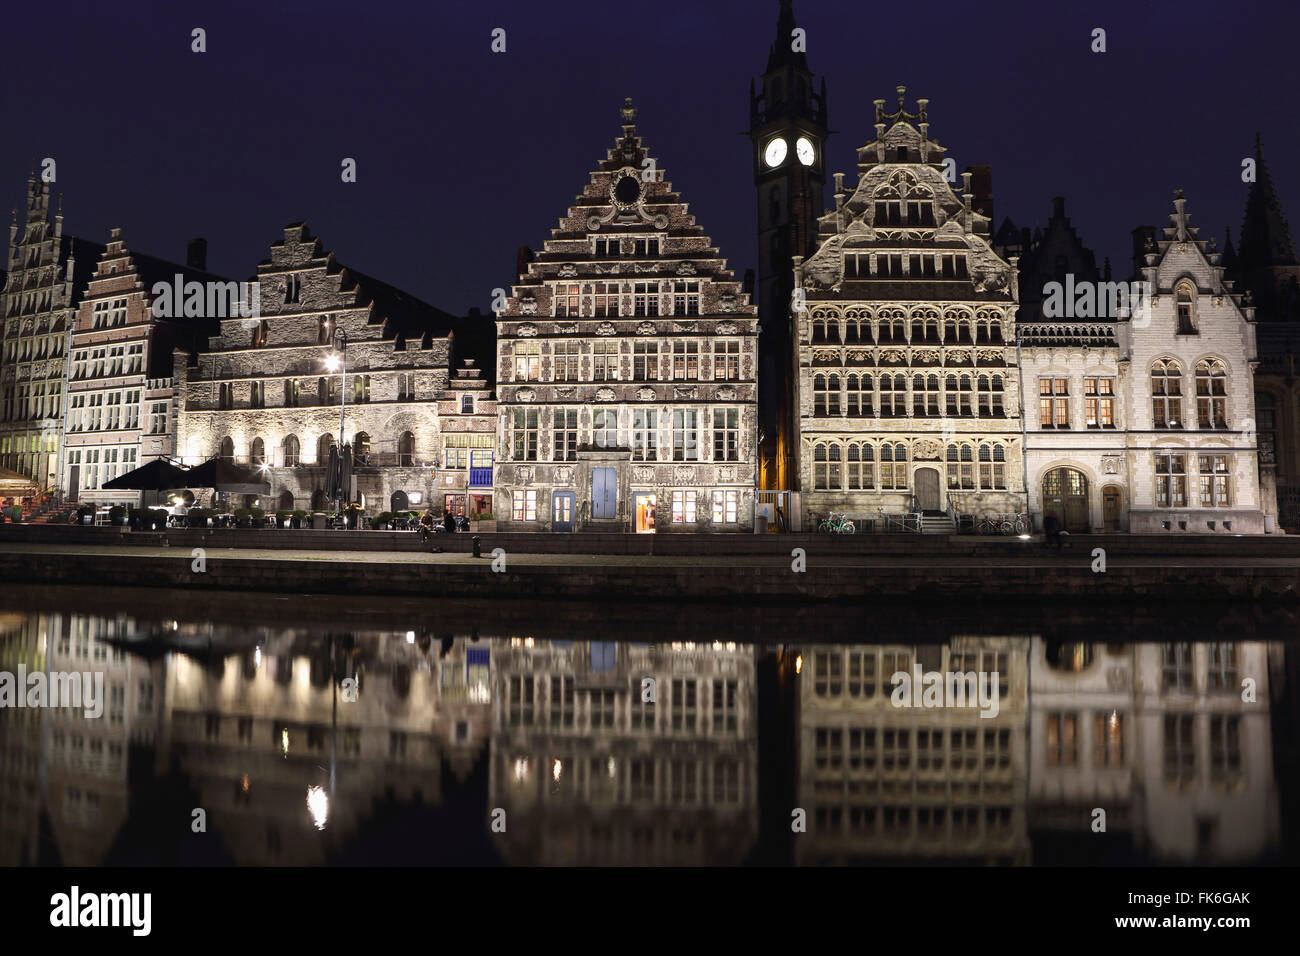 Les bâtiments de style gothique sur le front de Graslei ressortir dans l'canal de la Lys, de nuit dans le centre de Gand, Belgique, Europe Banque D'Images